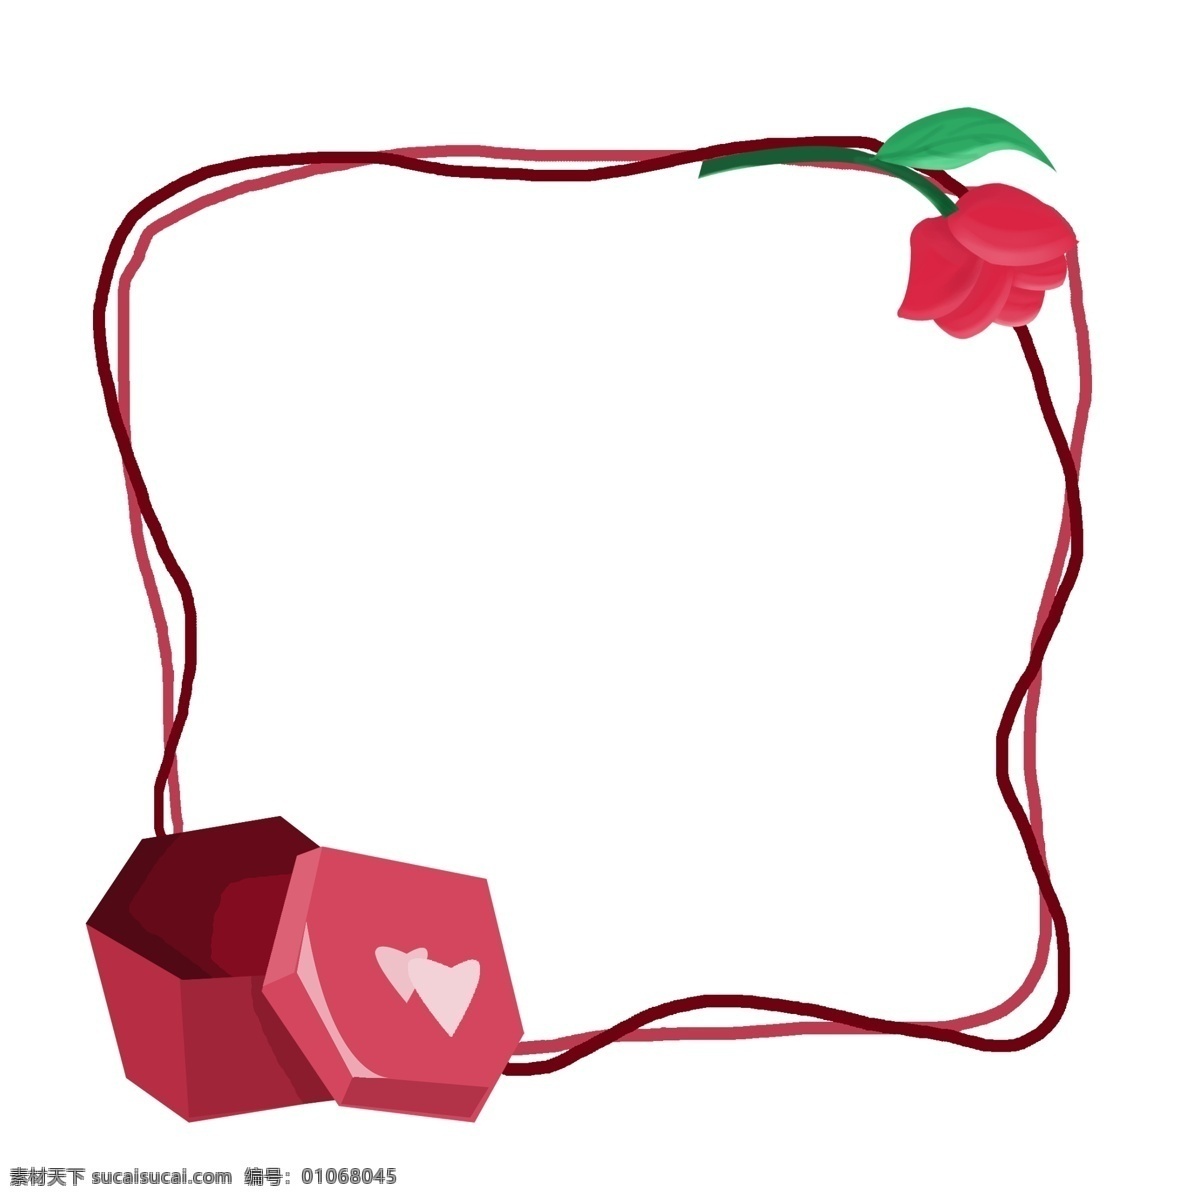 手绘 爱情 玫瑰花 边框 红色边框 礼物盒 红色礼物盒 手绘礼物盒 插画插图 手绘边框